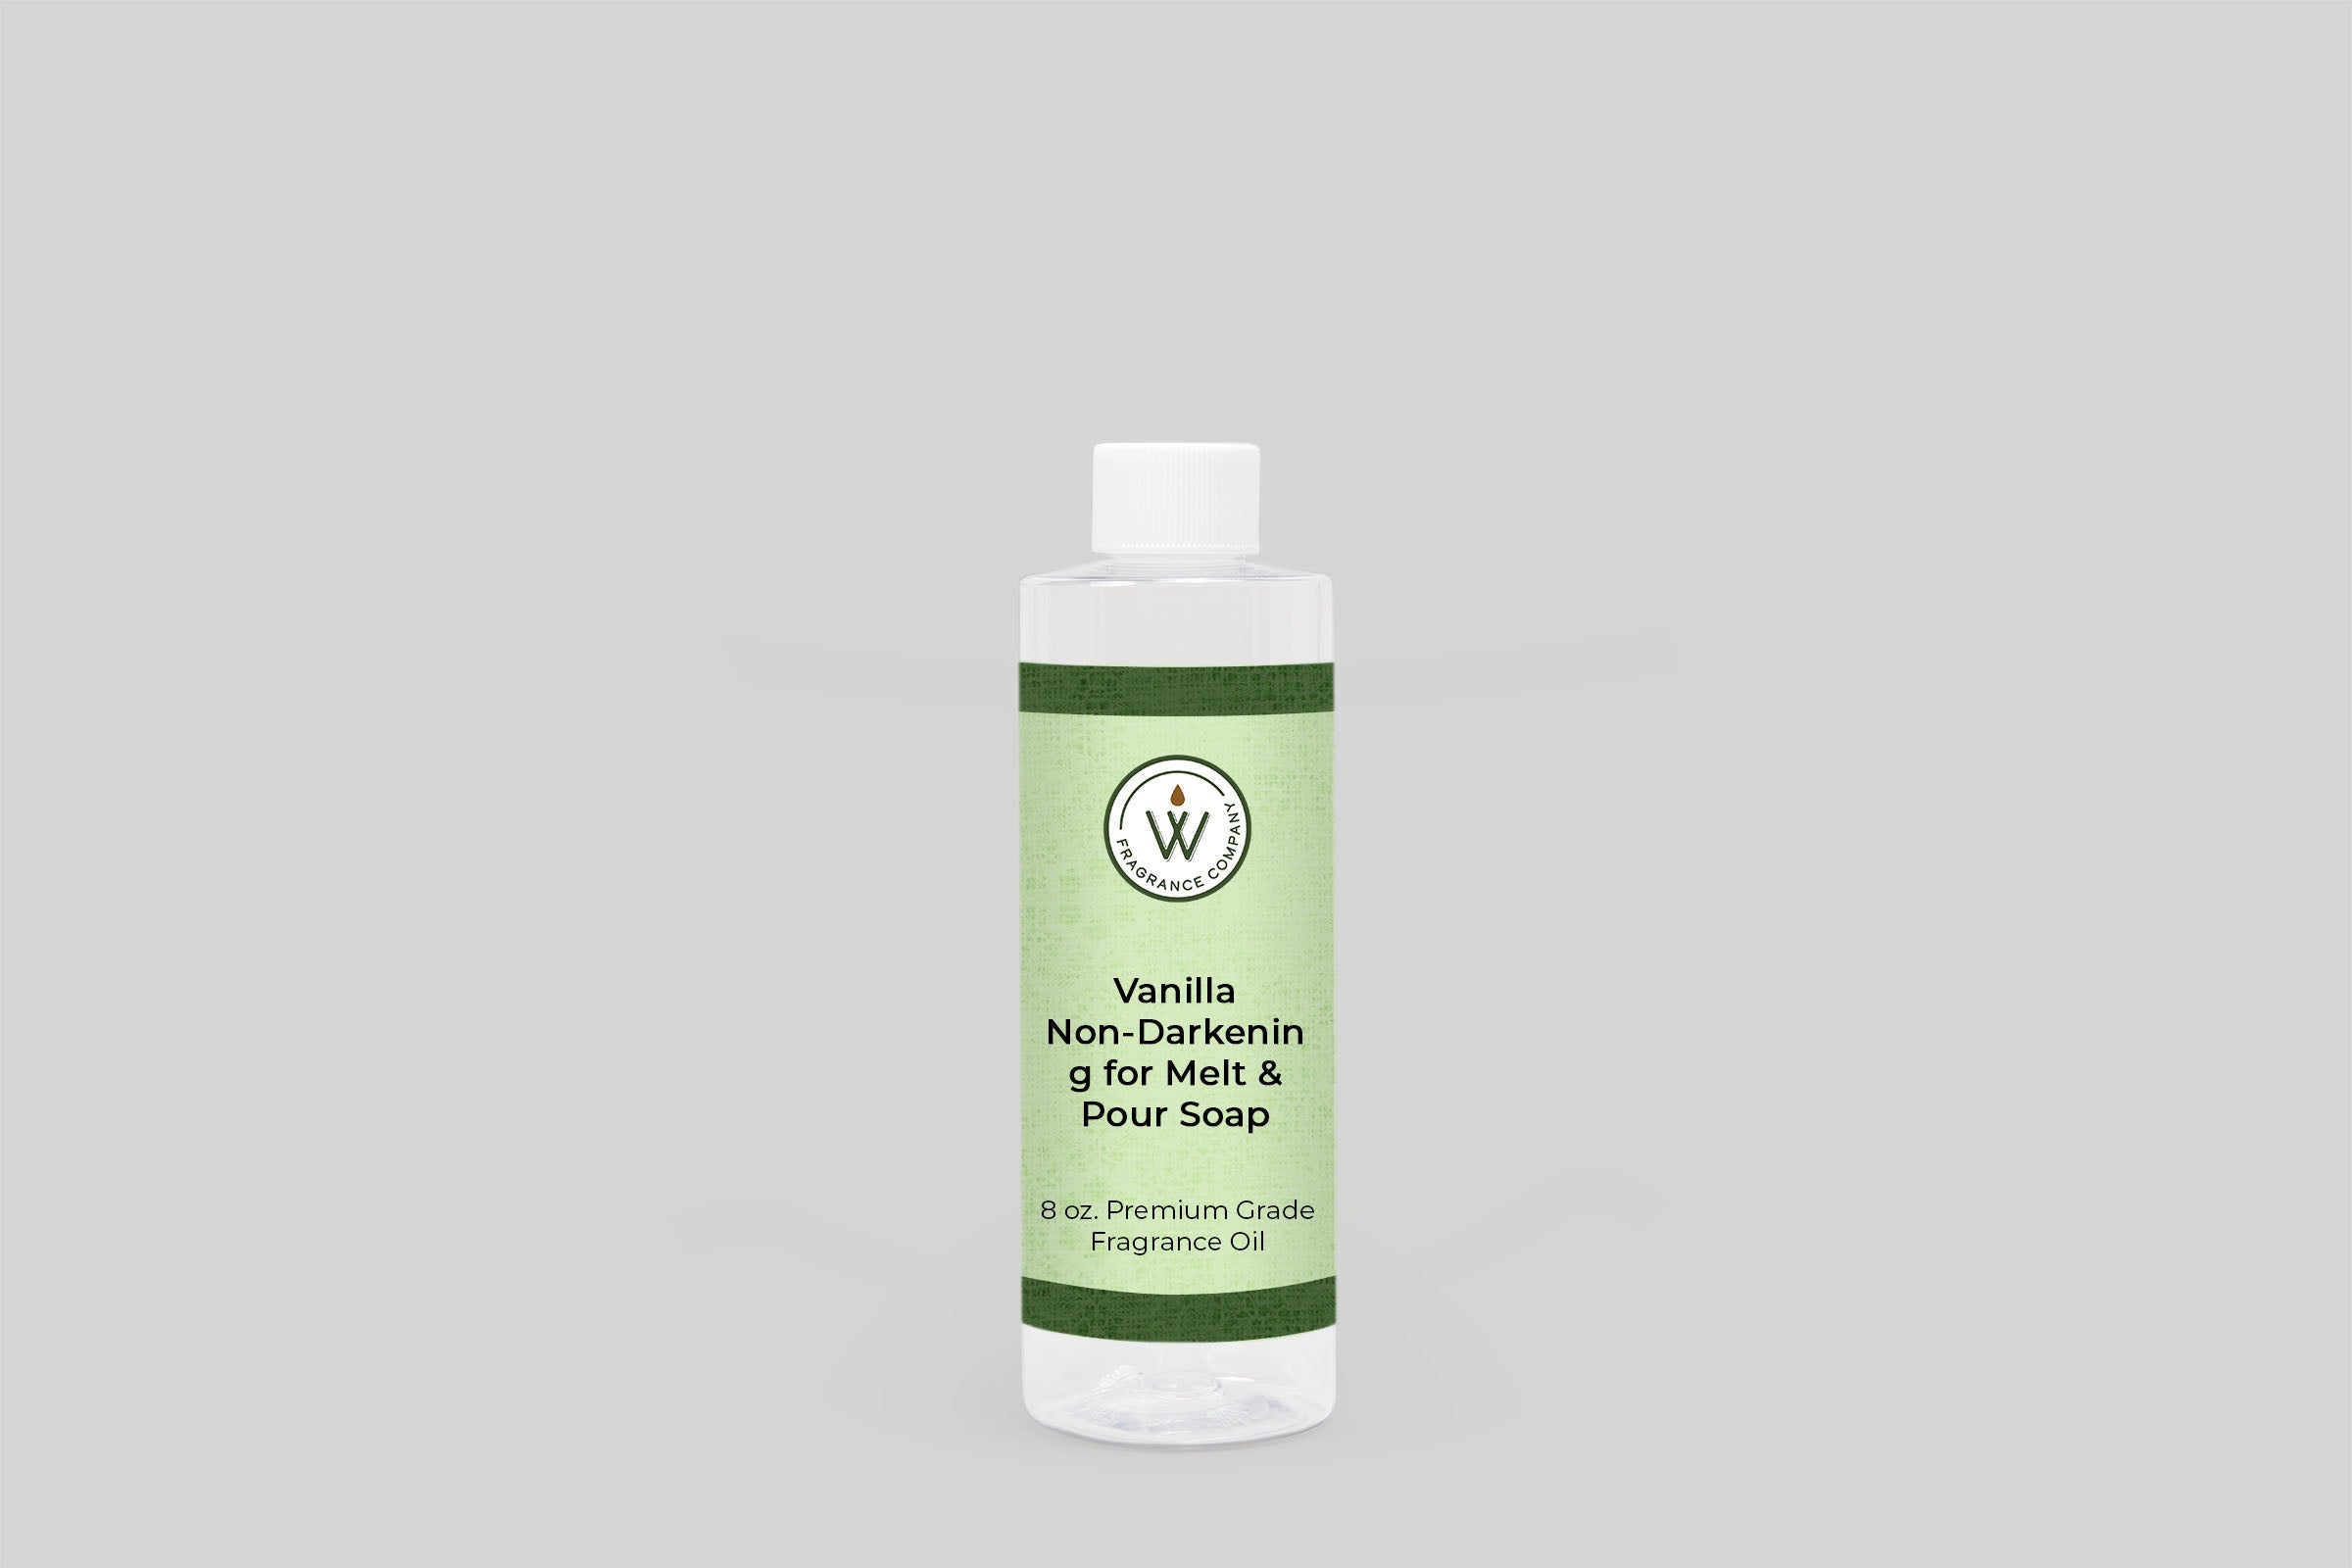 Vanilla Non-Darkening for Melt & Pour Soap Fragrance Oil